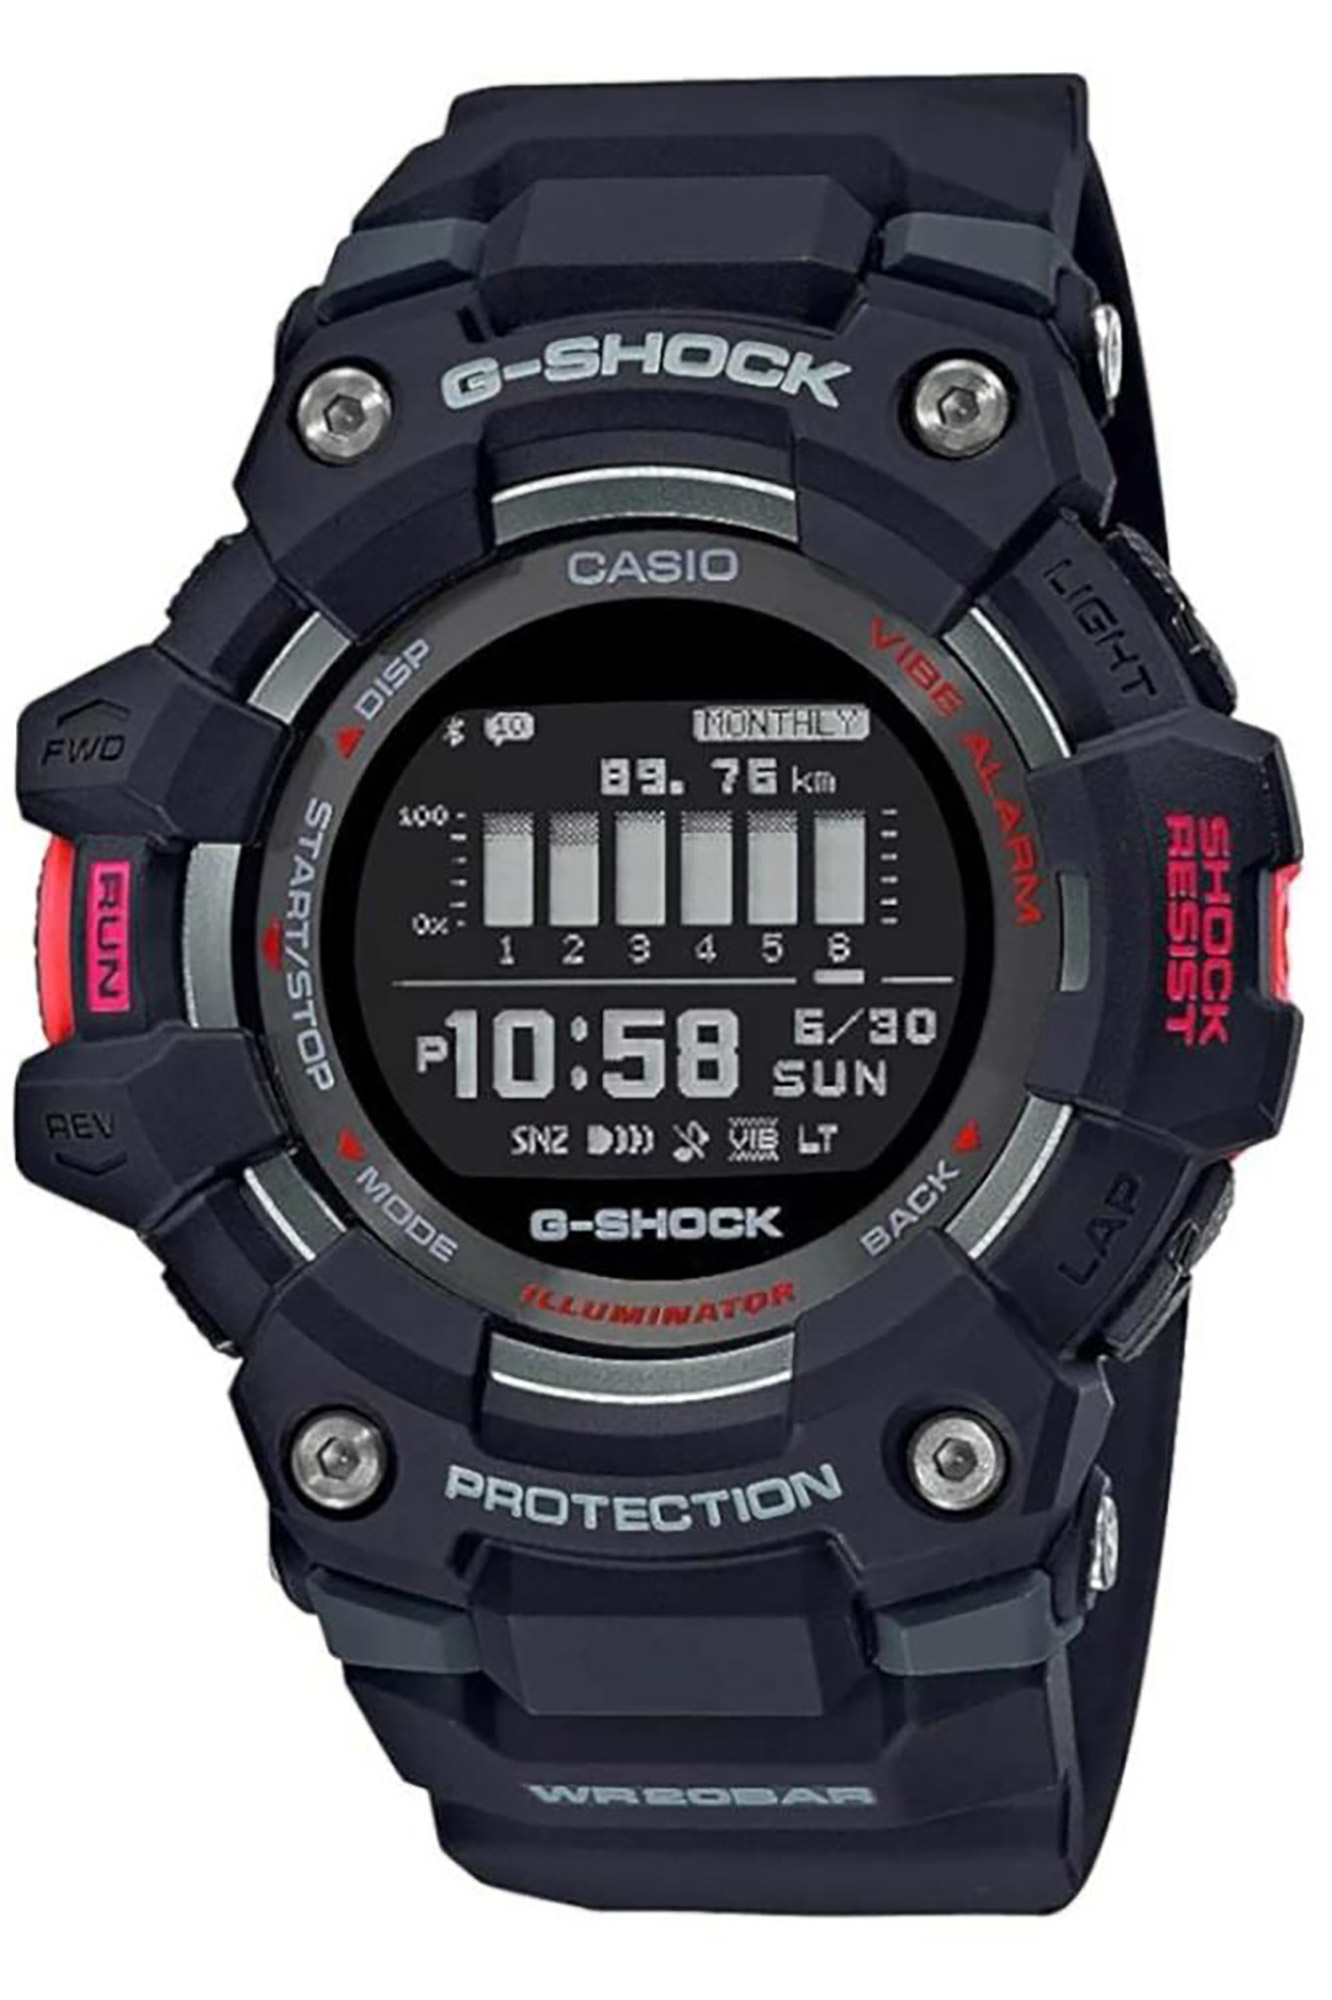 Watch CASIO G-Shock gbd-100-1er